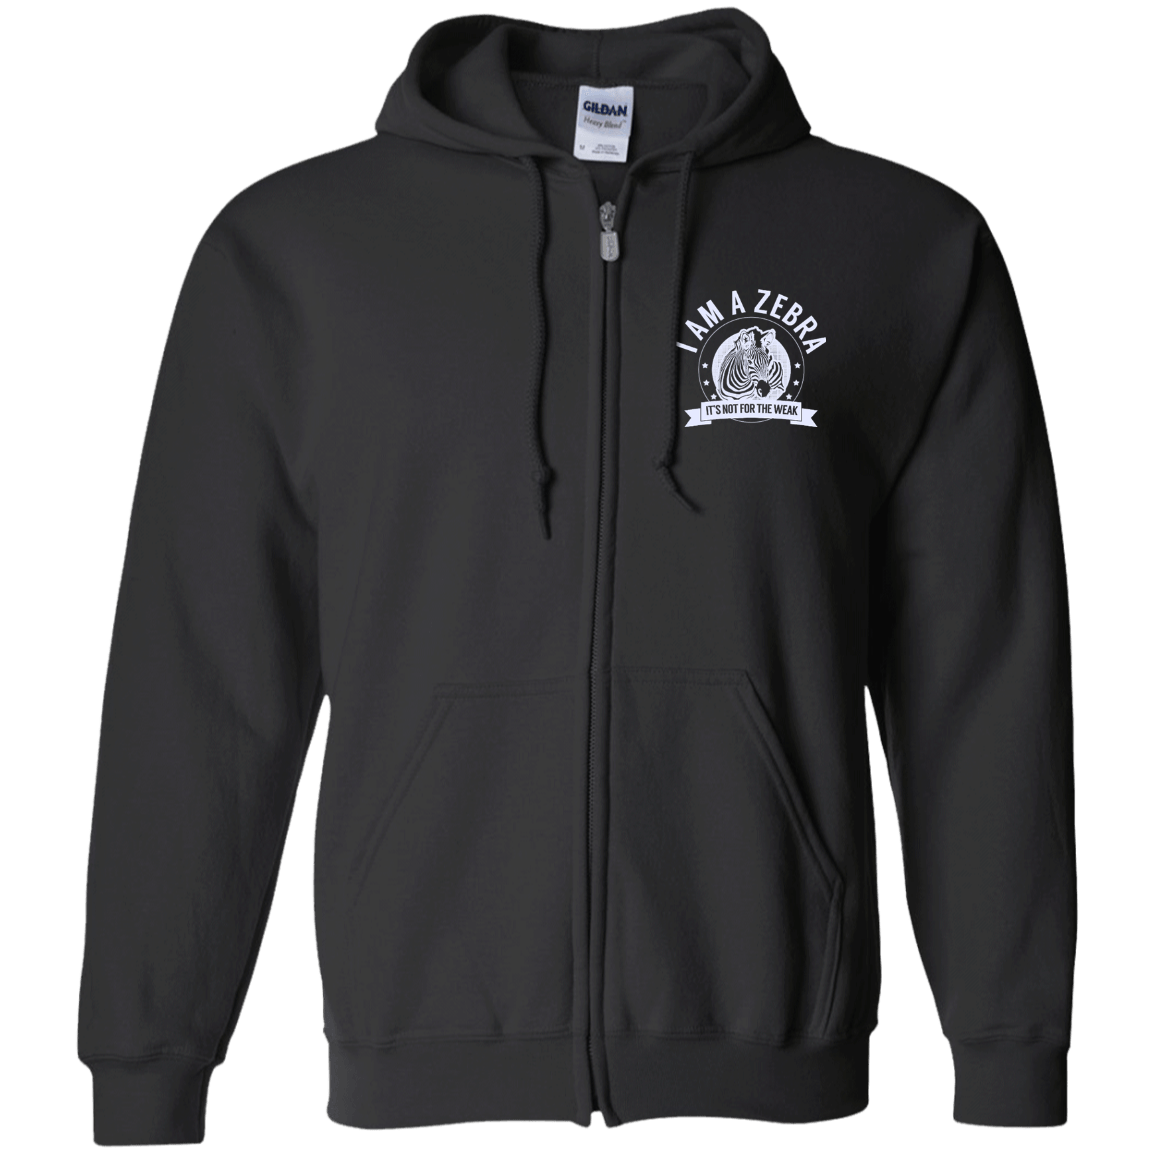 Zebra Warrior NFTW Zip Up Hooded Sweatshirt - The Unchargeables